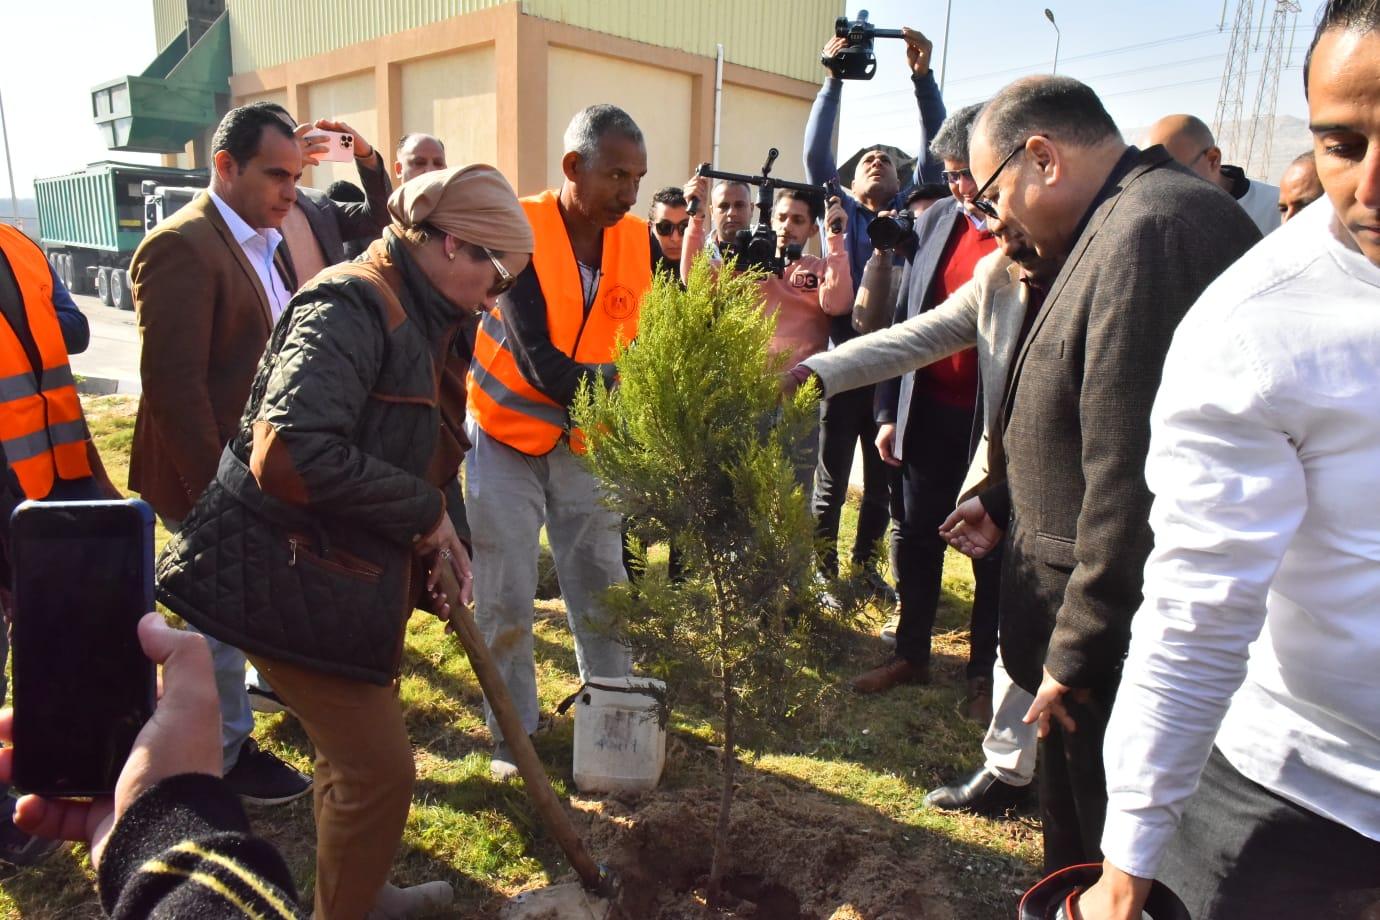 وزيرة البيئة ومحافظ أسيوط يشاركان في حملة تشجير ضمن مبادرة 100 مليون شجرة